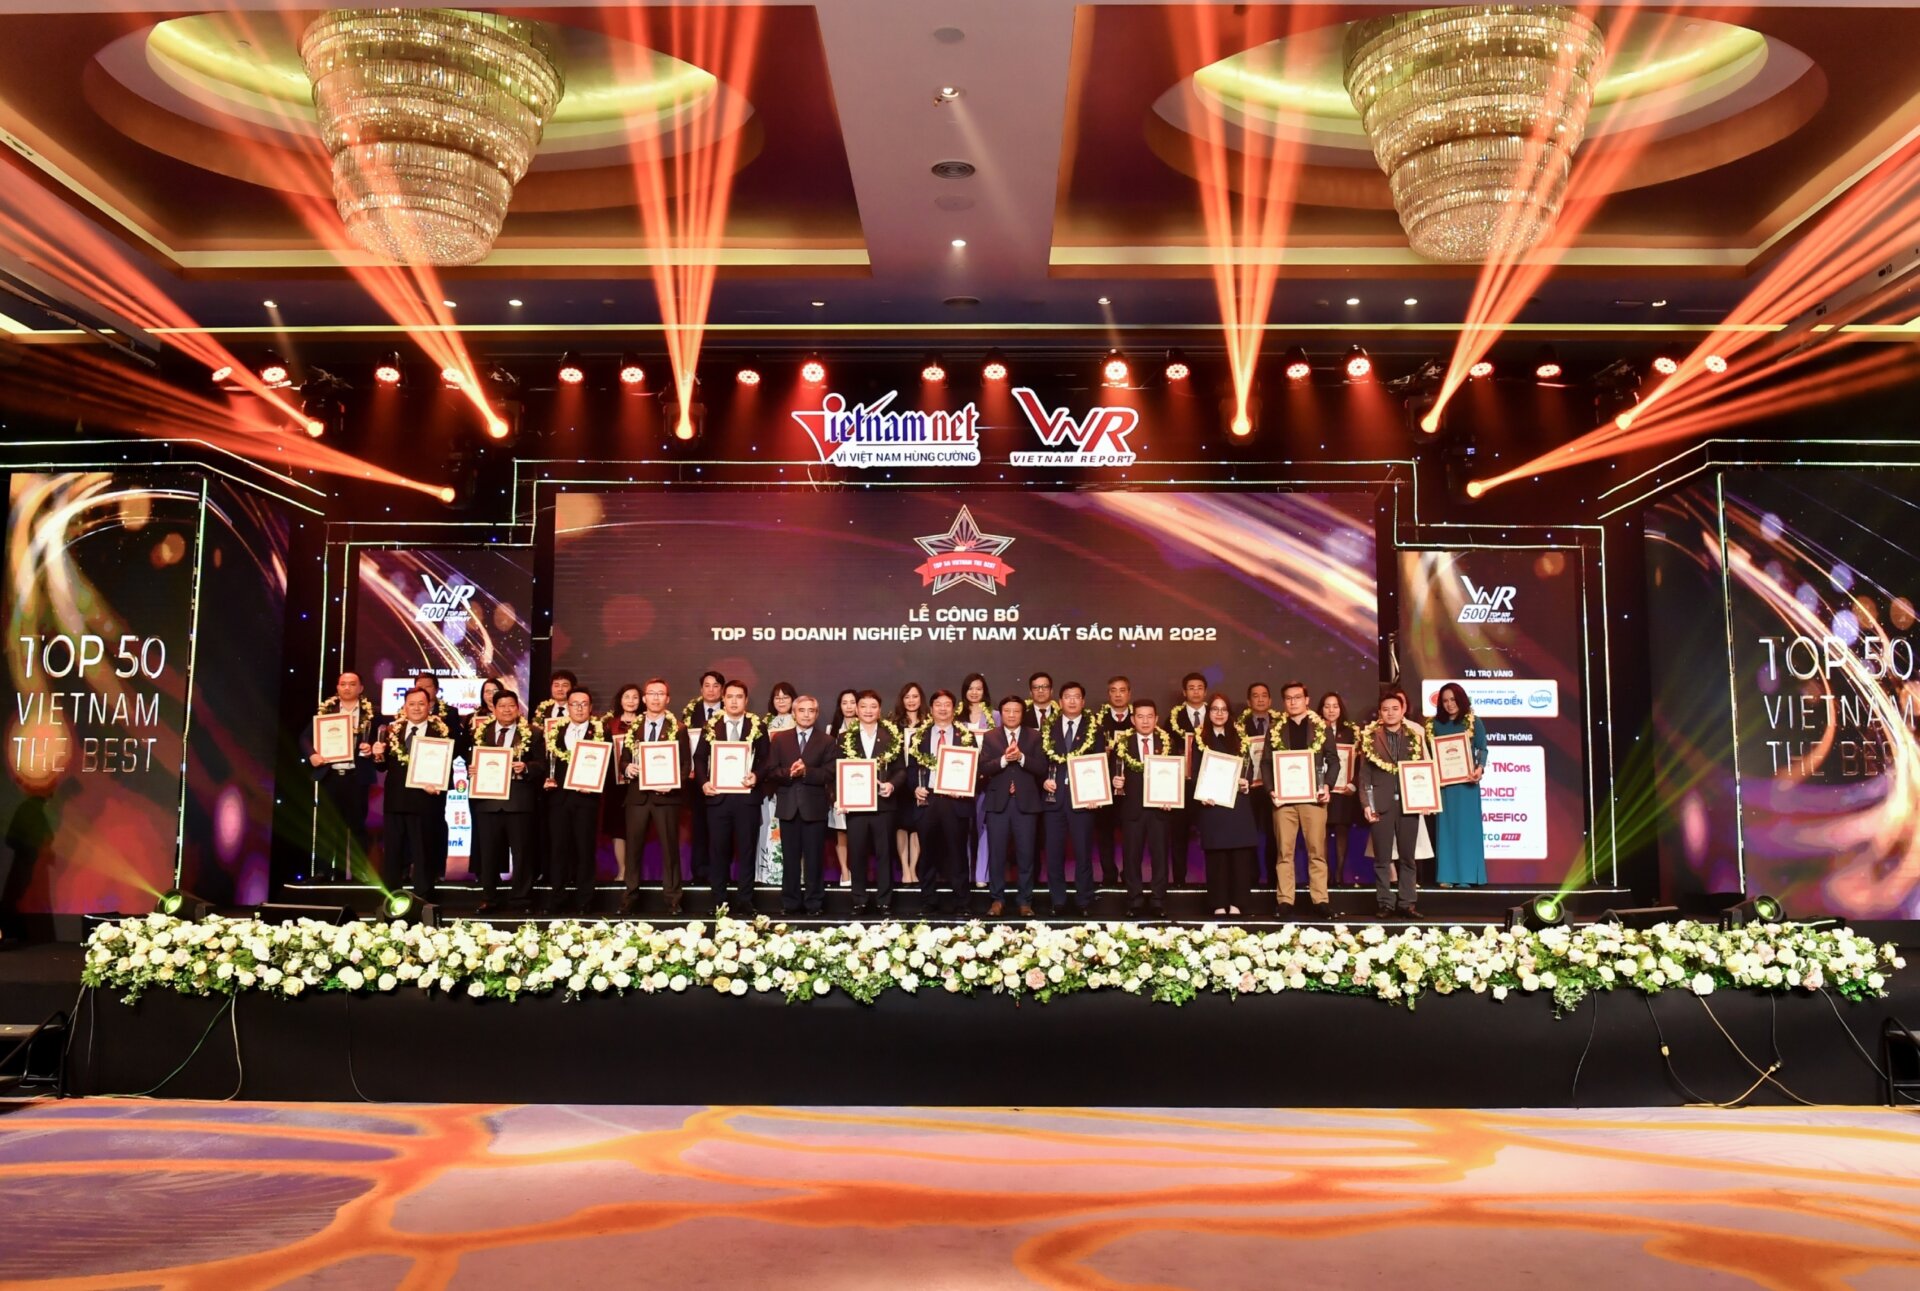 Giải thưởng góp phần khẳng định uy tín thương hiệu, giúp doanh nghiệp nâng cao năng lực cạnh tranh trong bối cảnh kinh tế Việt Nam đang hội nhập khu vực và thế giới (Ảnh: Khang Điền)